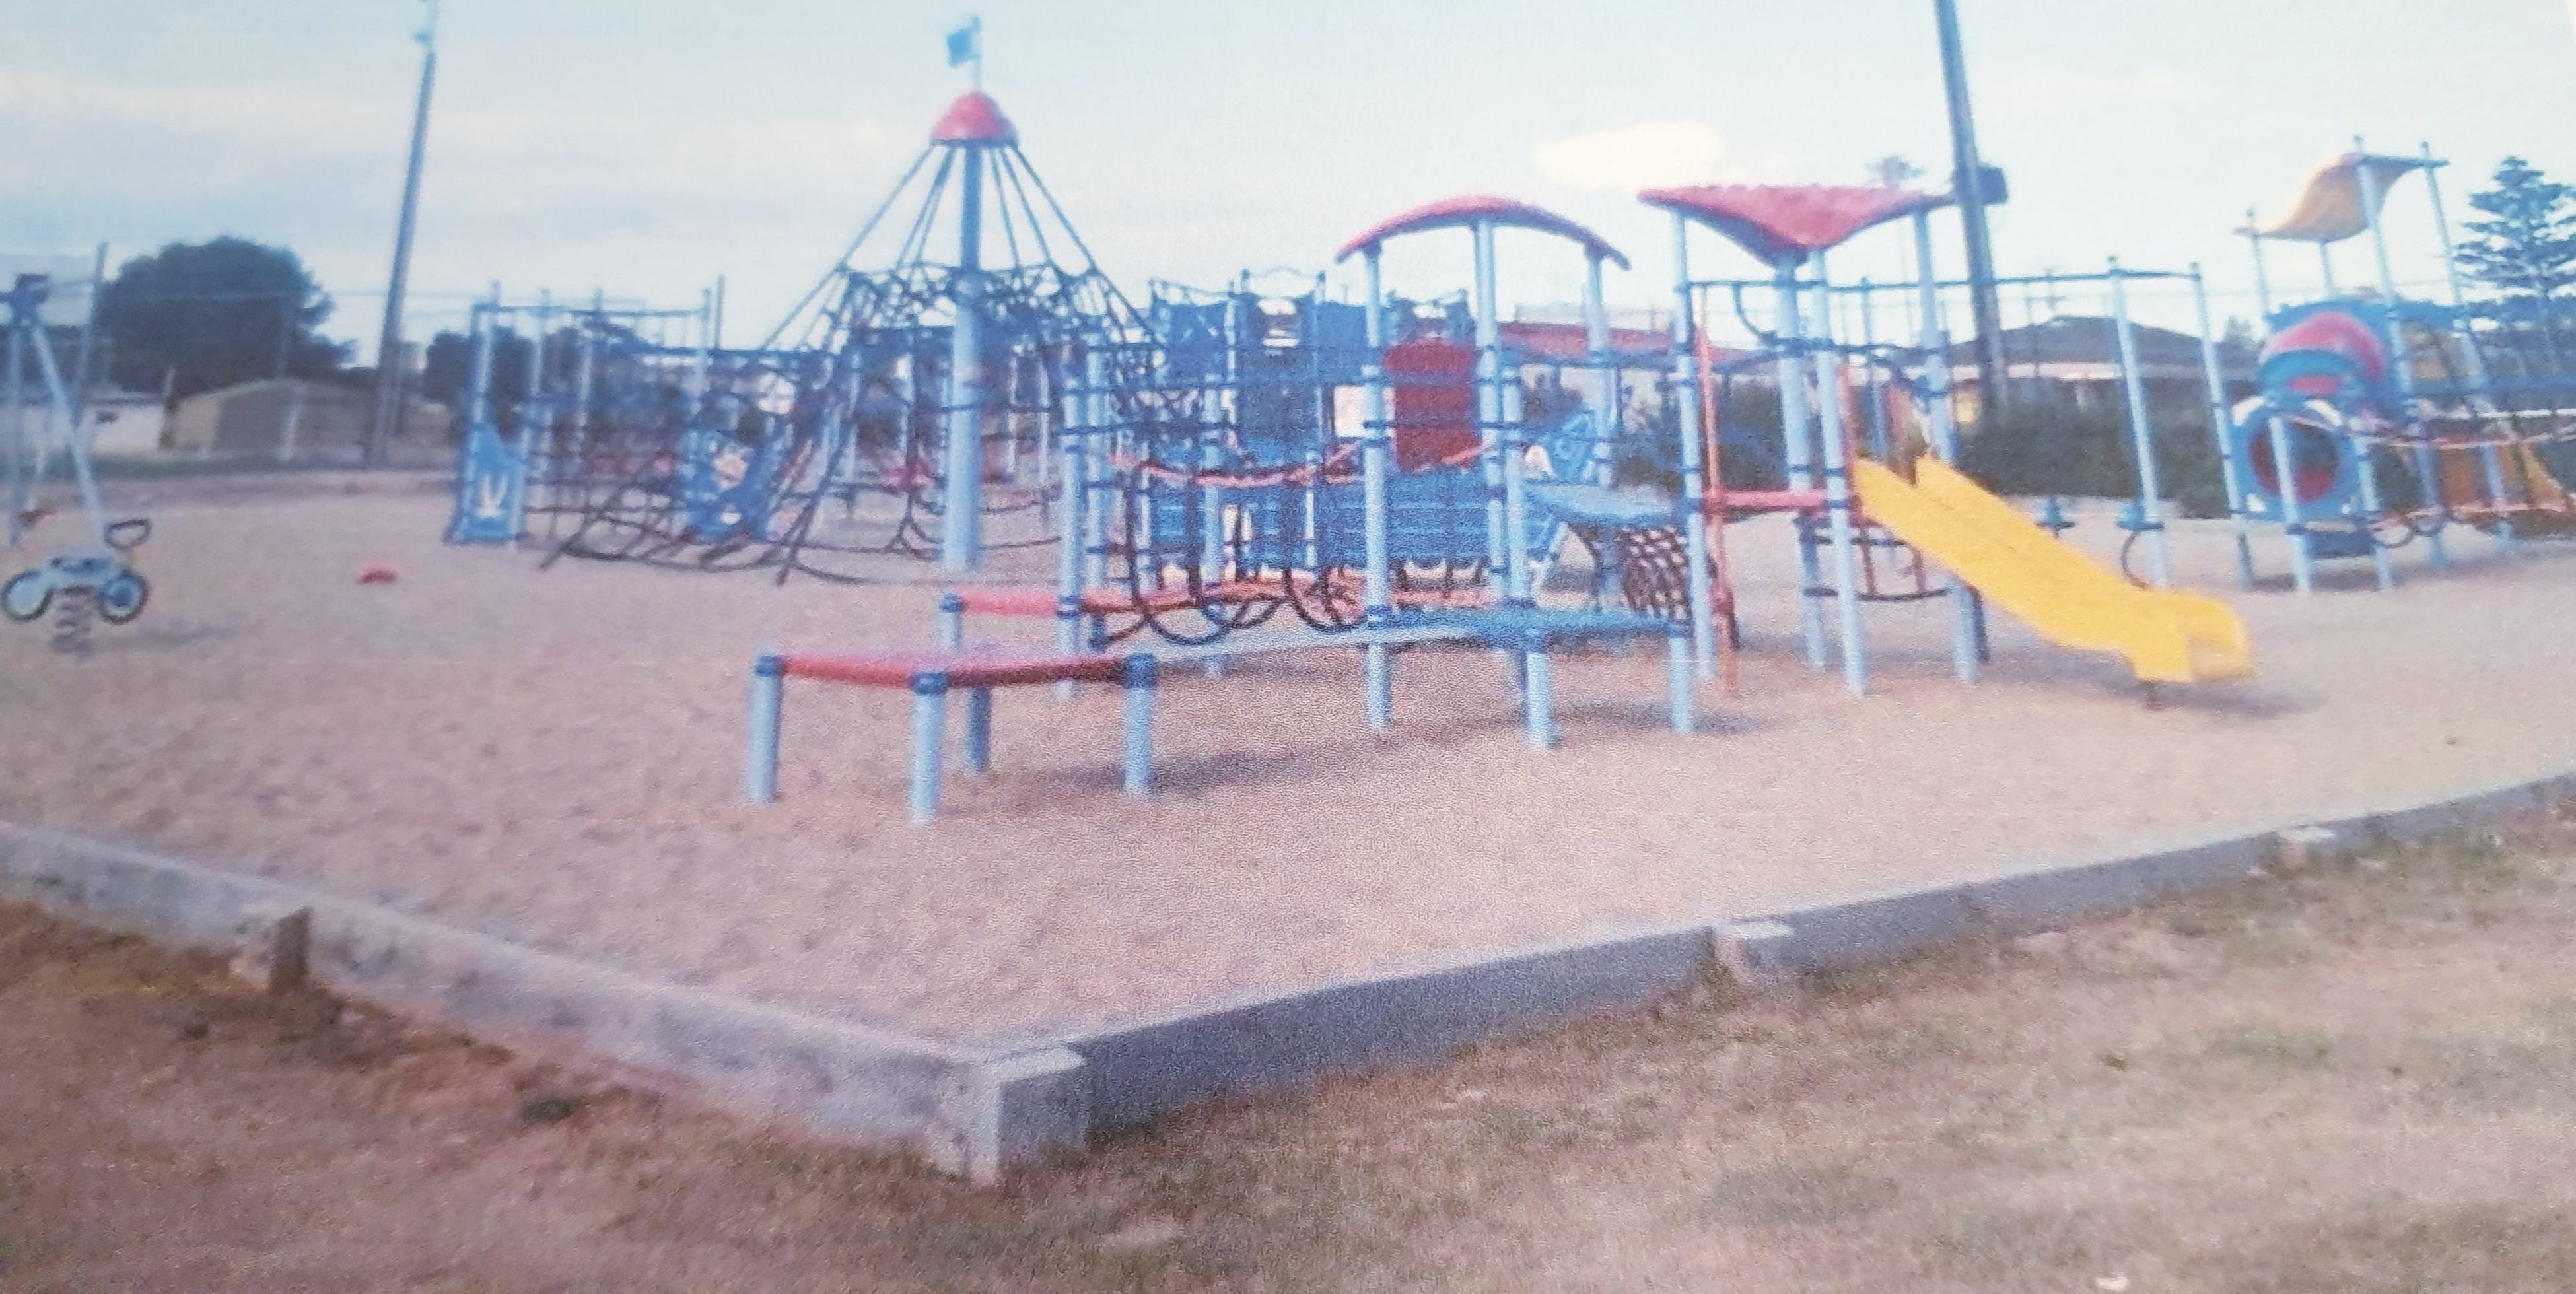 Edithburgh Playground - Accommodation Mermaid Beach